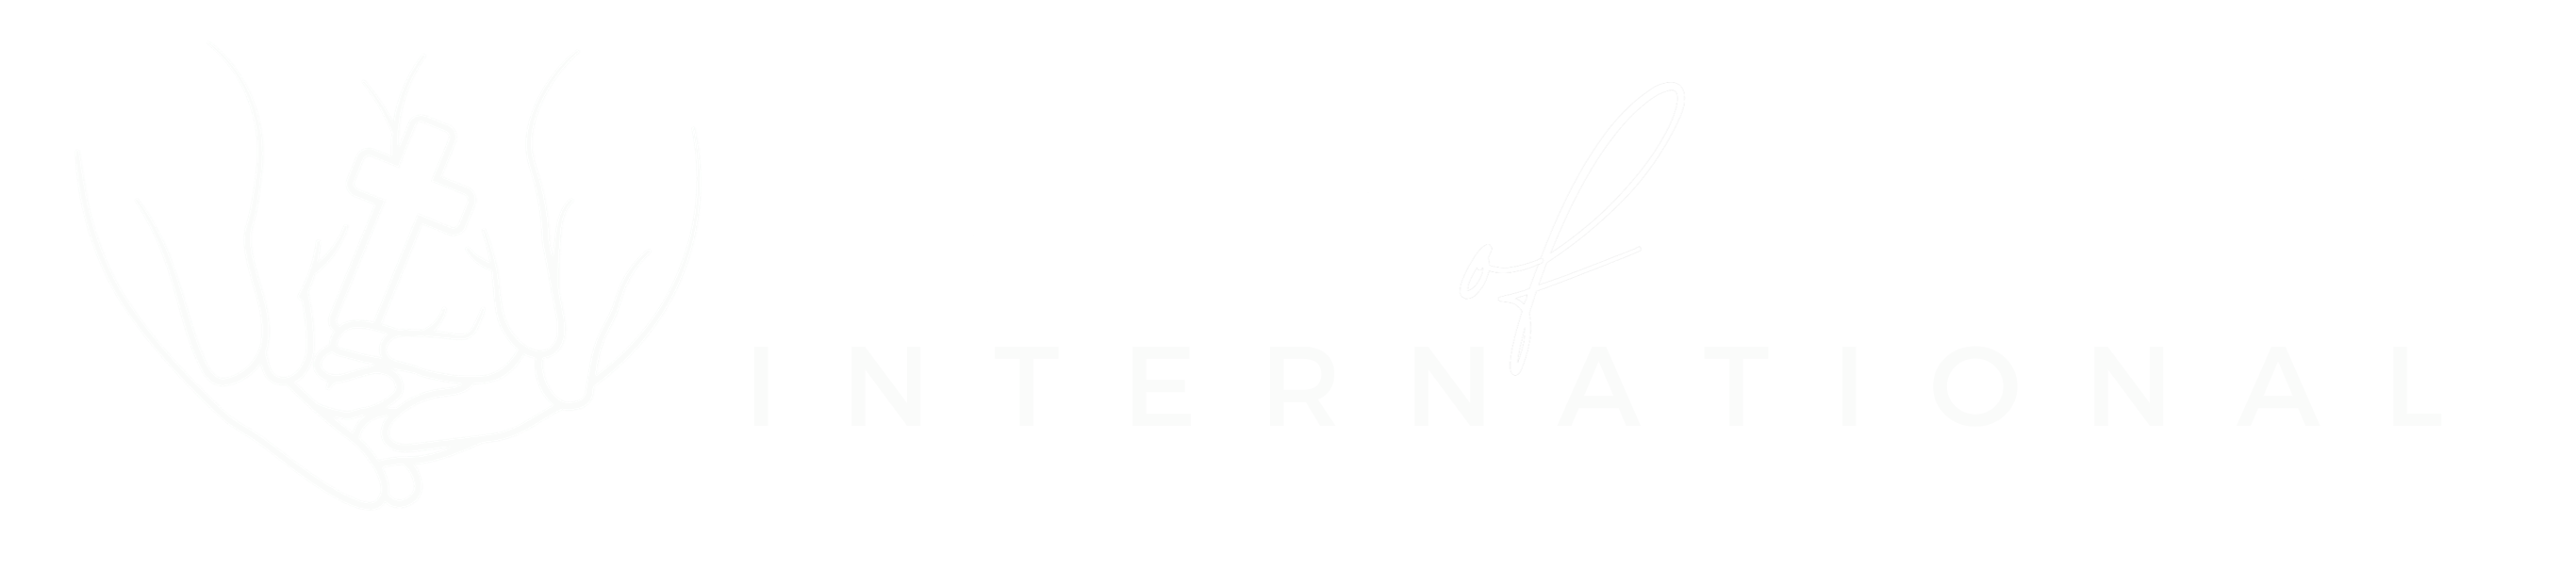 Family of Christ International